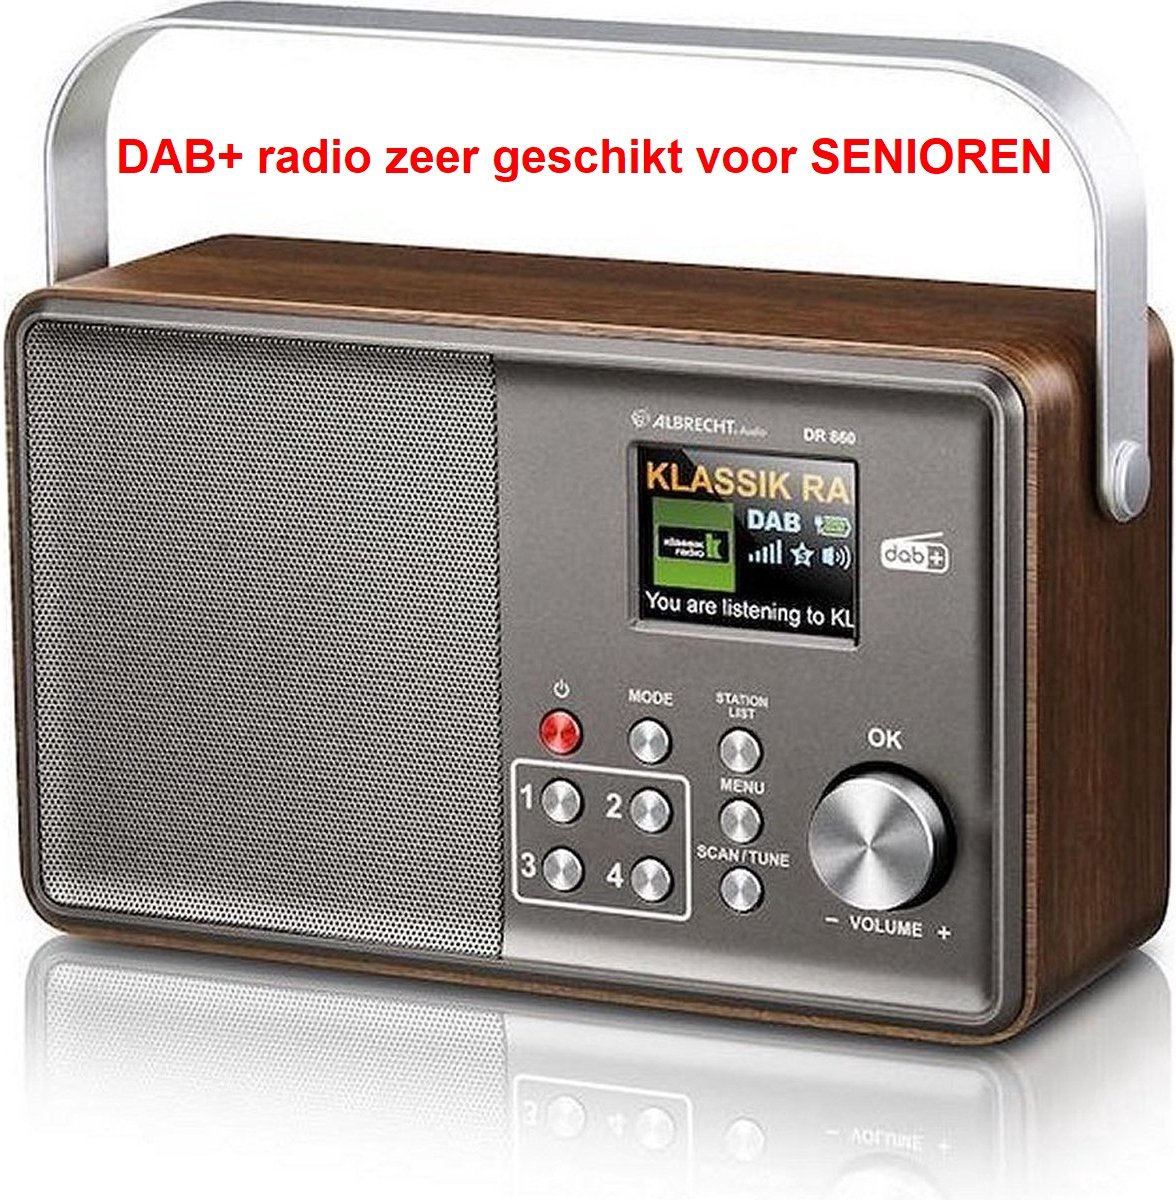 ALBRECHT.Audio DR860 Portable DAB+ Radio - SENIORENRADIO